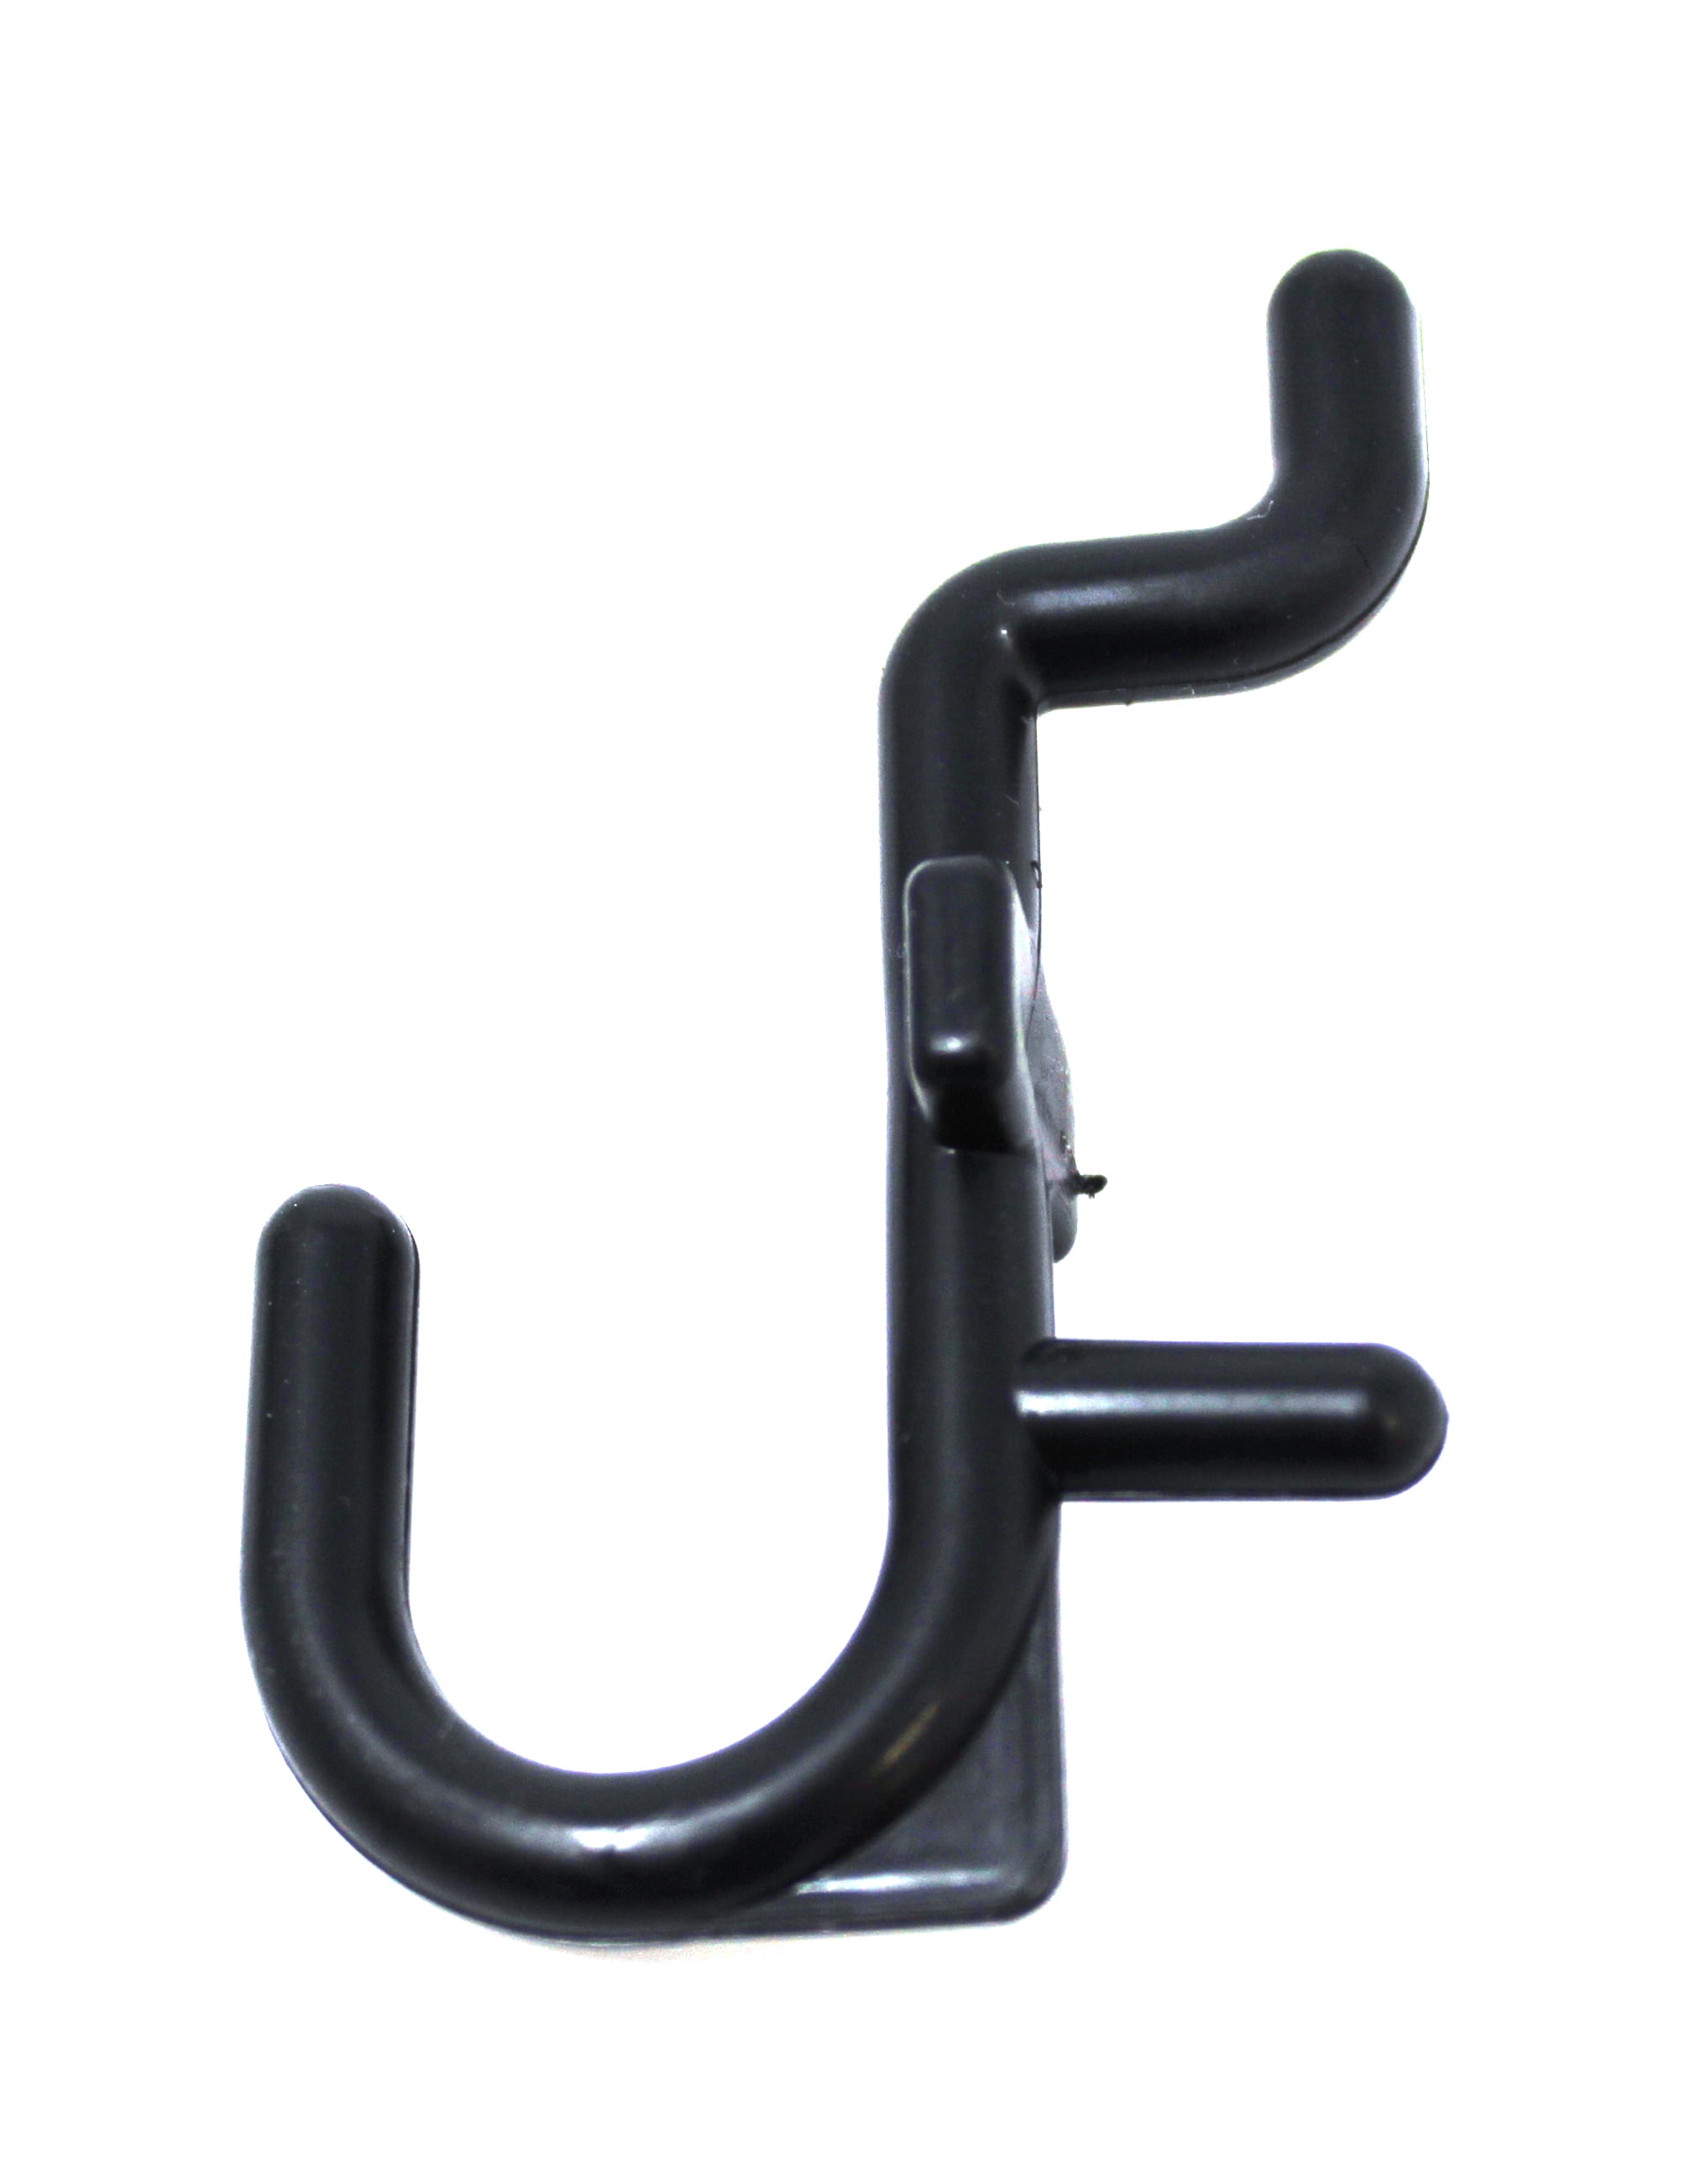 NON-Locking J Style Plastic Pegboard Hooks Plastic Pegboard Hooks - Crafts  / Tools -Multi-Quantity packs 